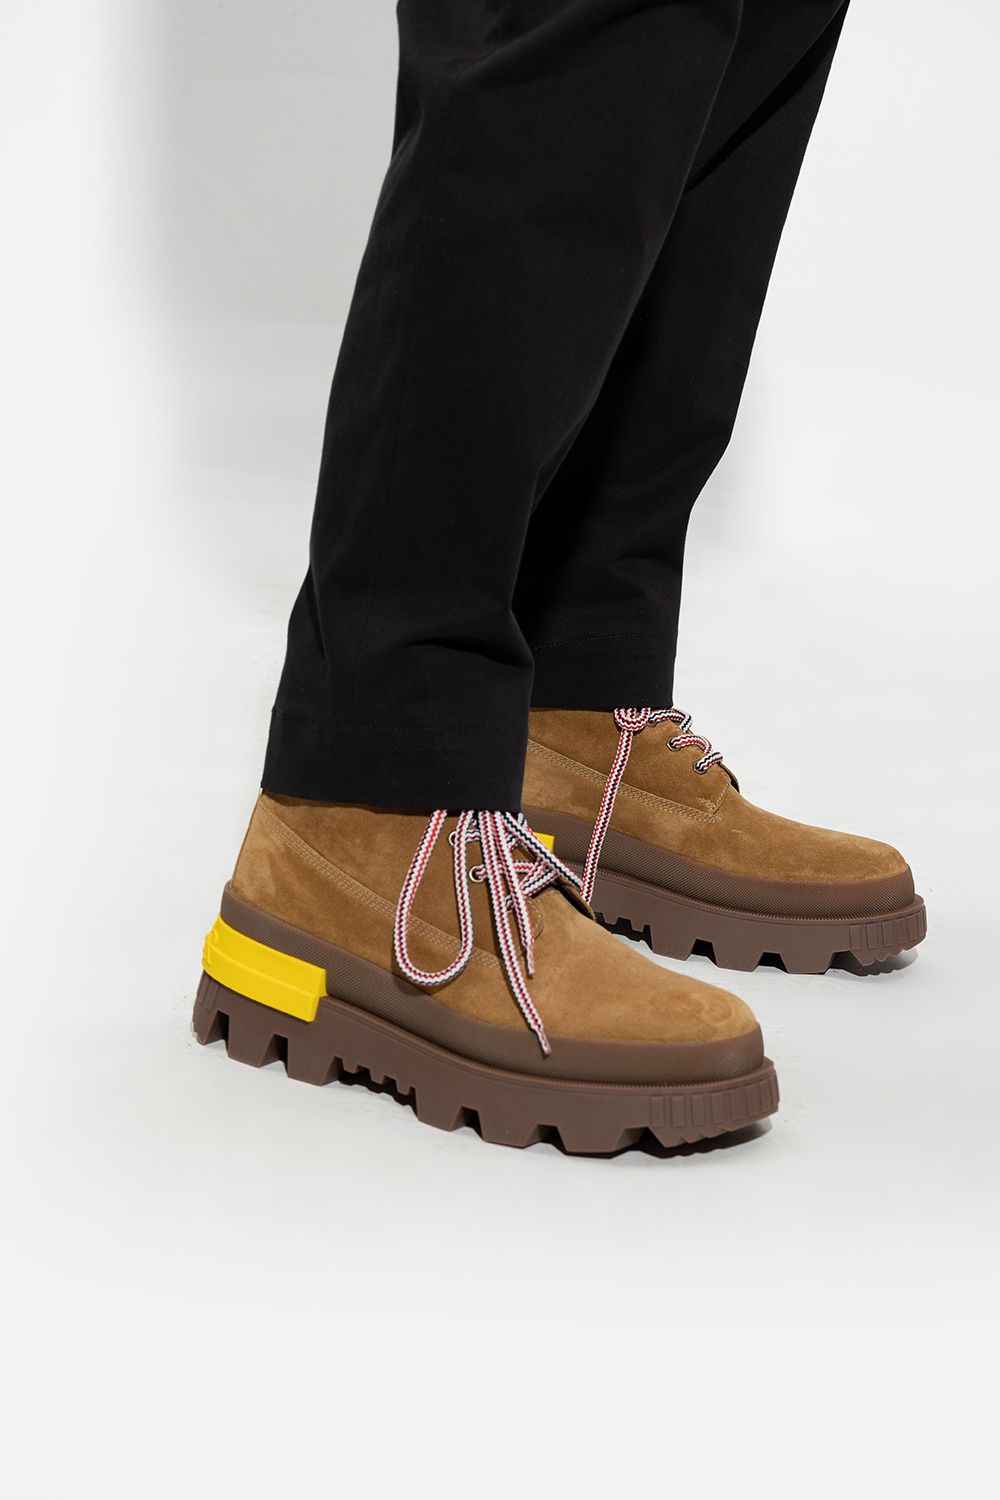 Moncler ‘Mon Corp’ leather boots | Men's Shoes | Vitkac